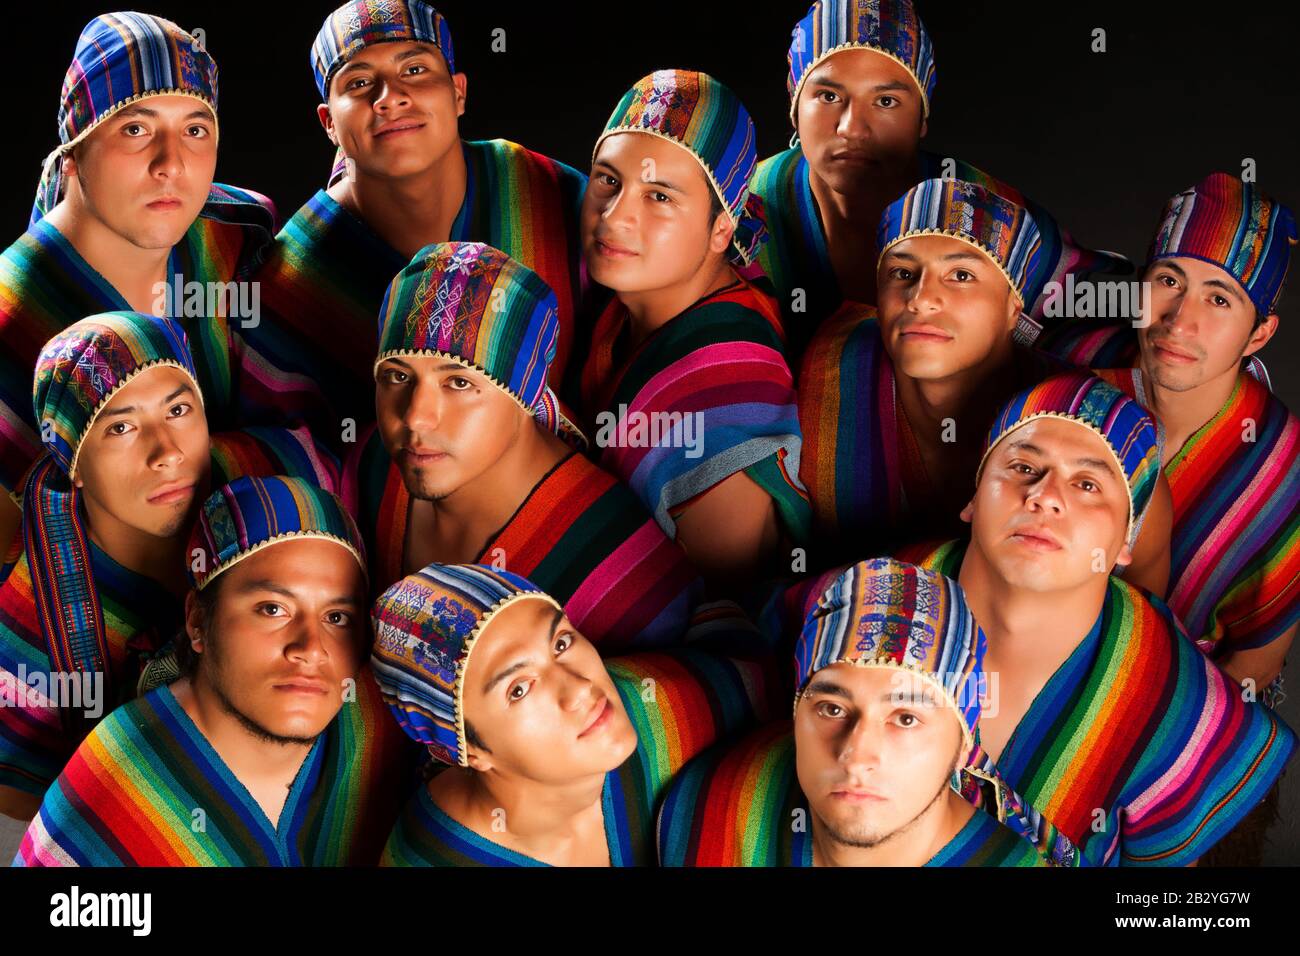 Groupe folklorique équatorien habillé de costumes traditionnels Studio Shot. Banque D'Images